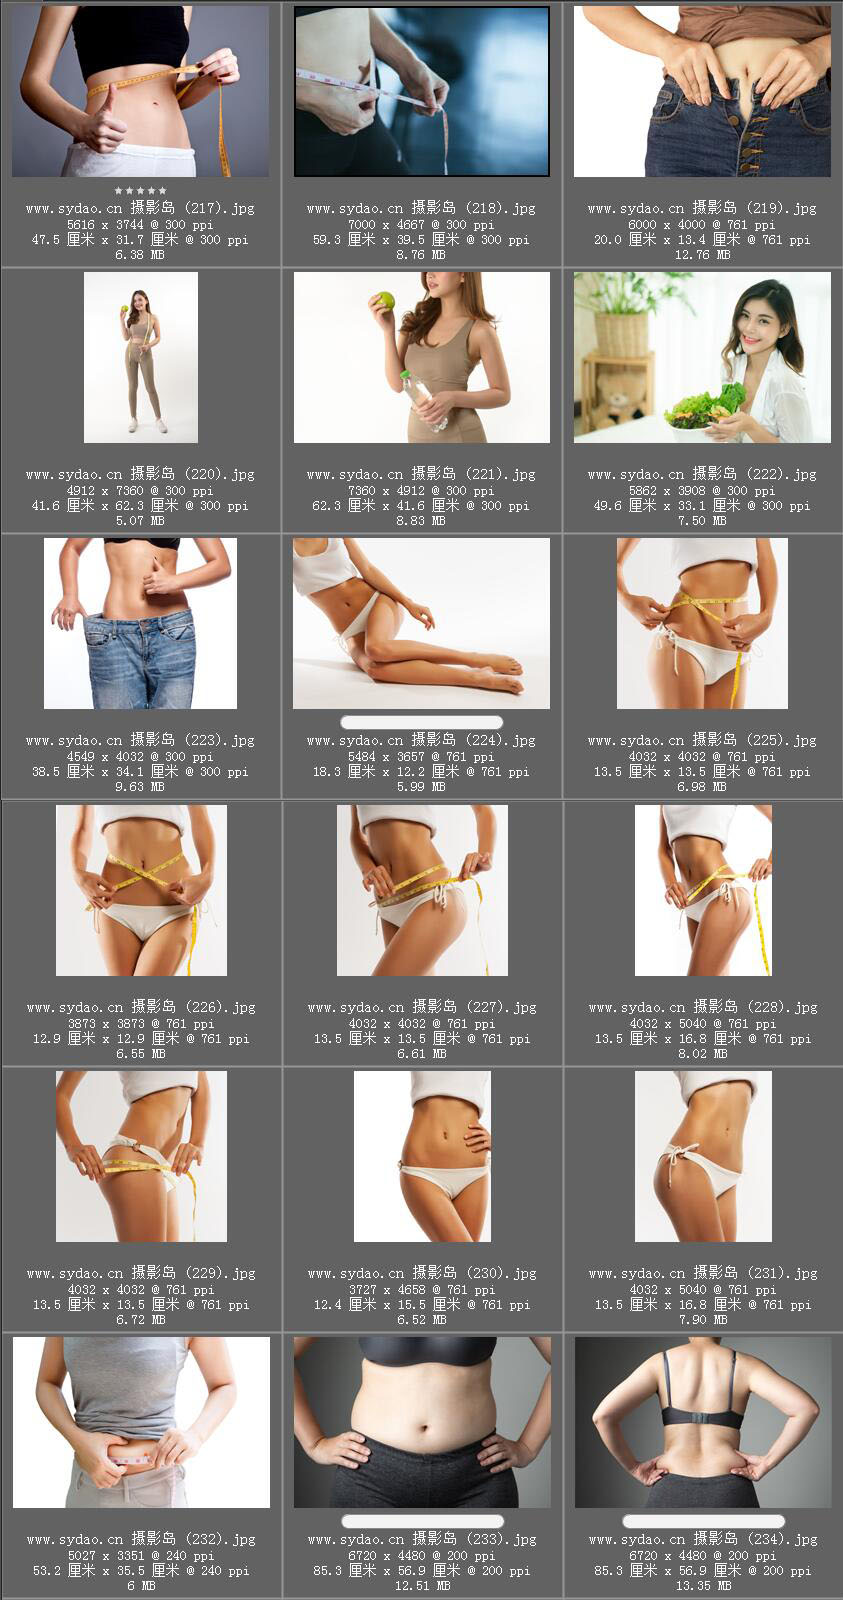 女性瘦身塑形照片对比素材，美女模特腰围腹部减脂样片，减肥平面广告摄影图片全集